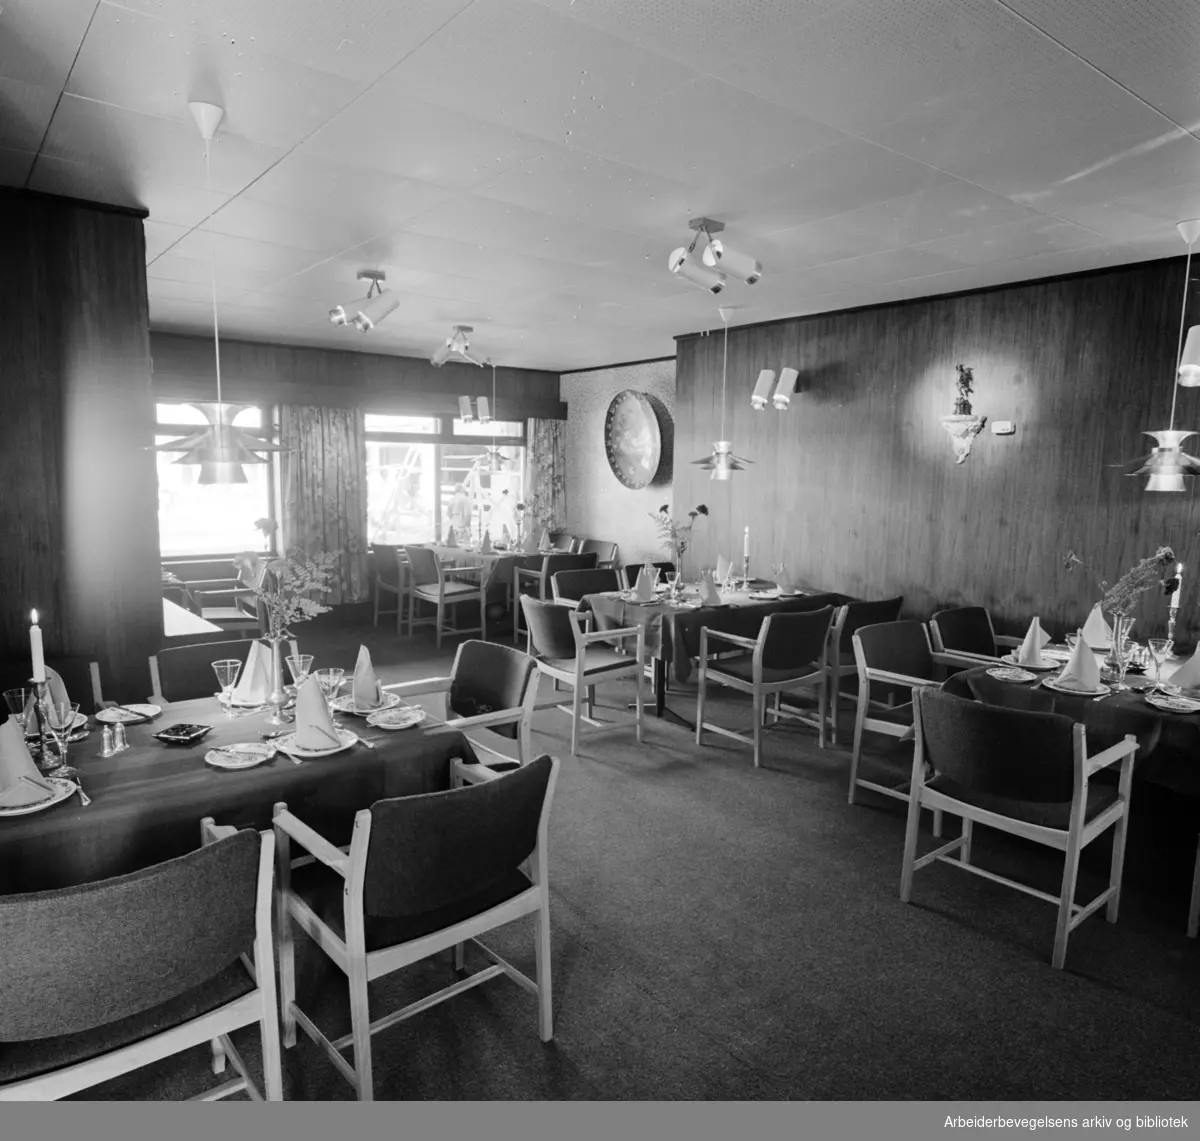 Grorud: "Den gyldne elefant", ny restaurant. Interiører. September 1963